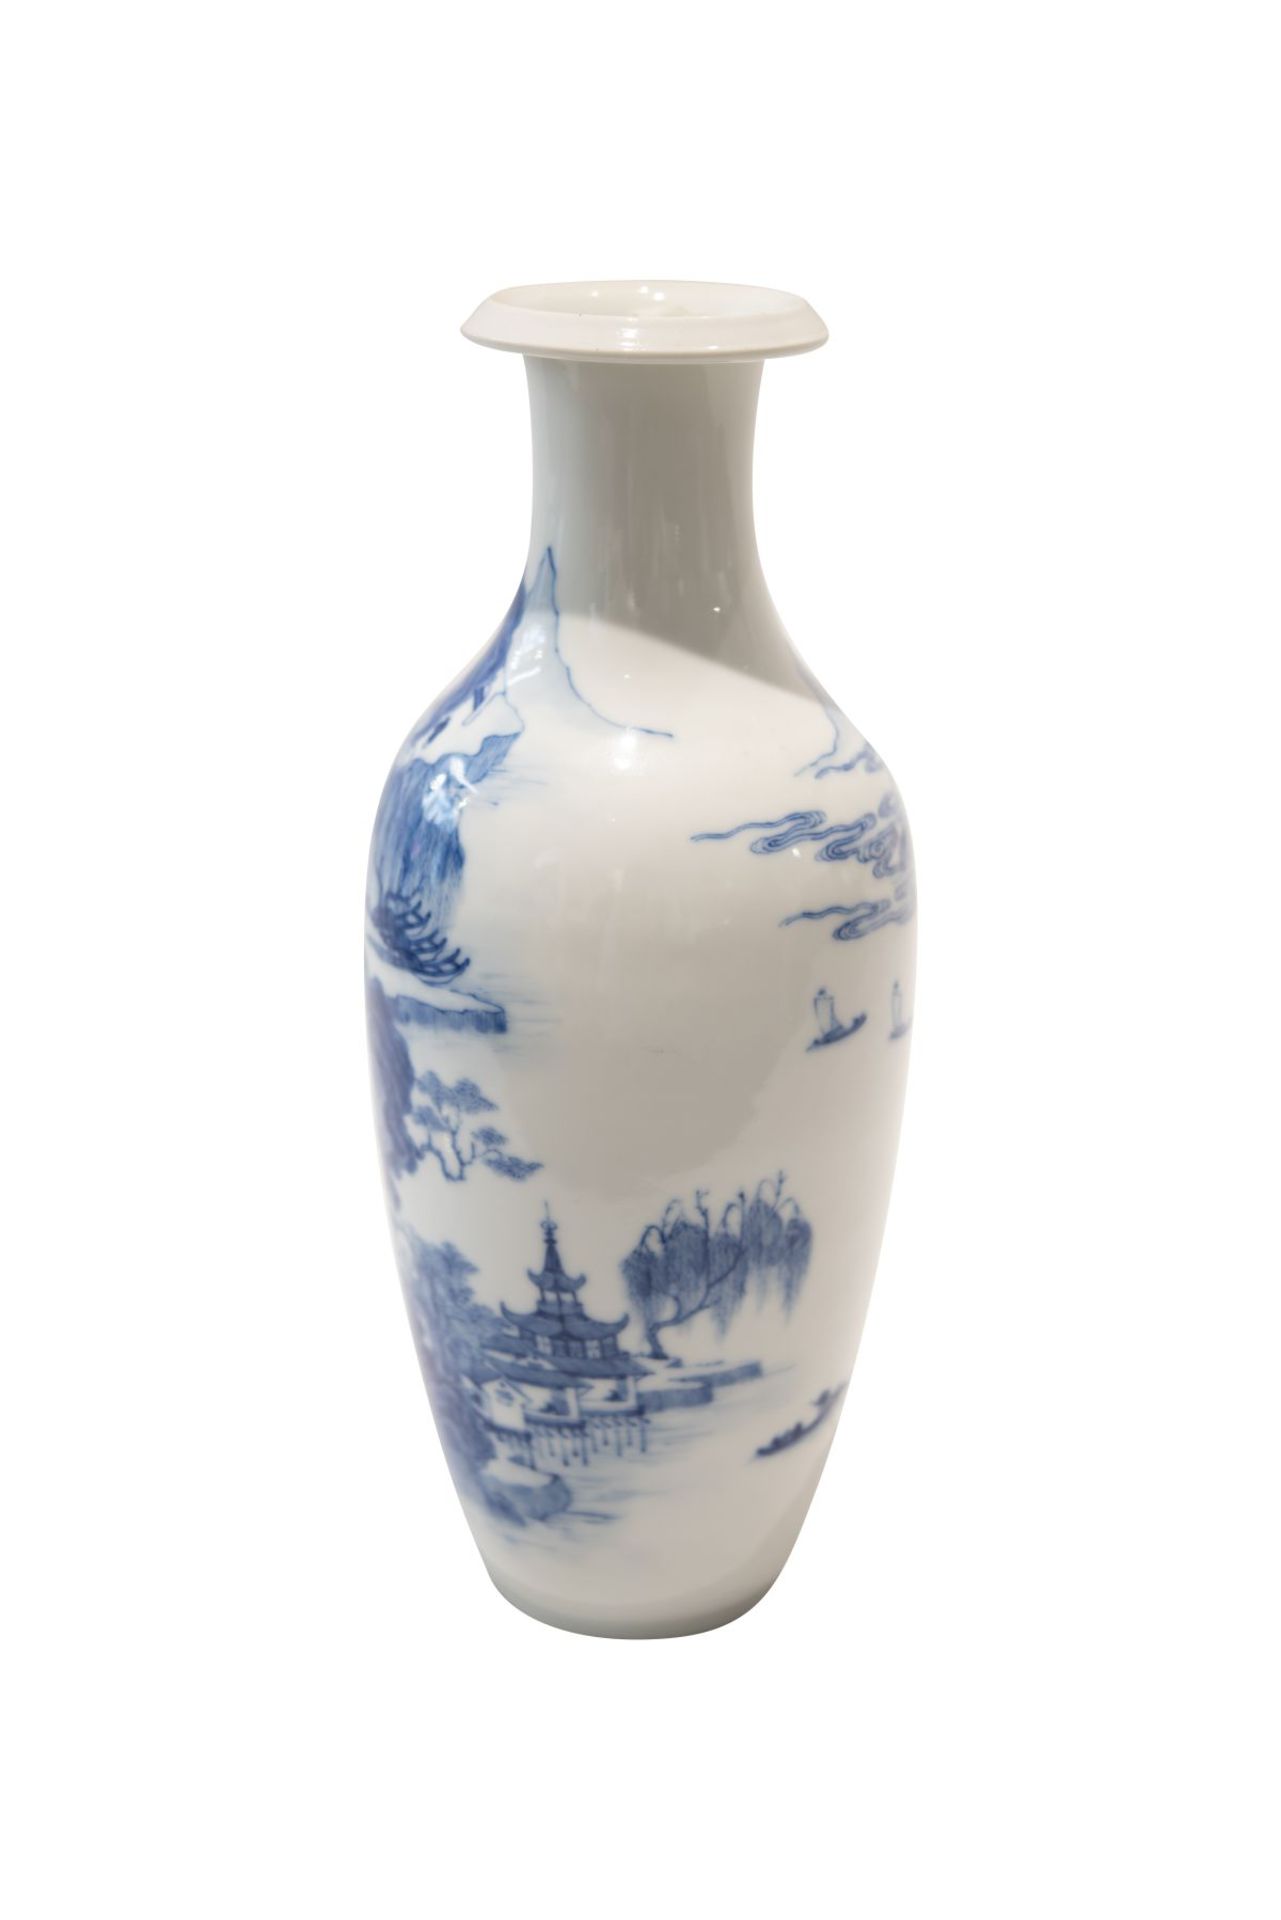 Blau-weise VaseBlau-weise Vase mit unterglasurblaue Vierzeichen Marke. Porzellan, auf der Wandung - Image 3 of 5